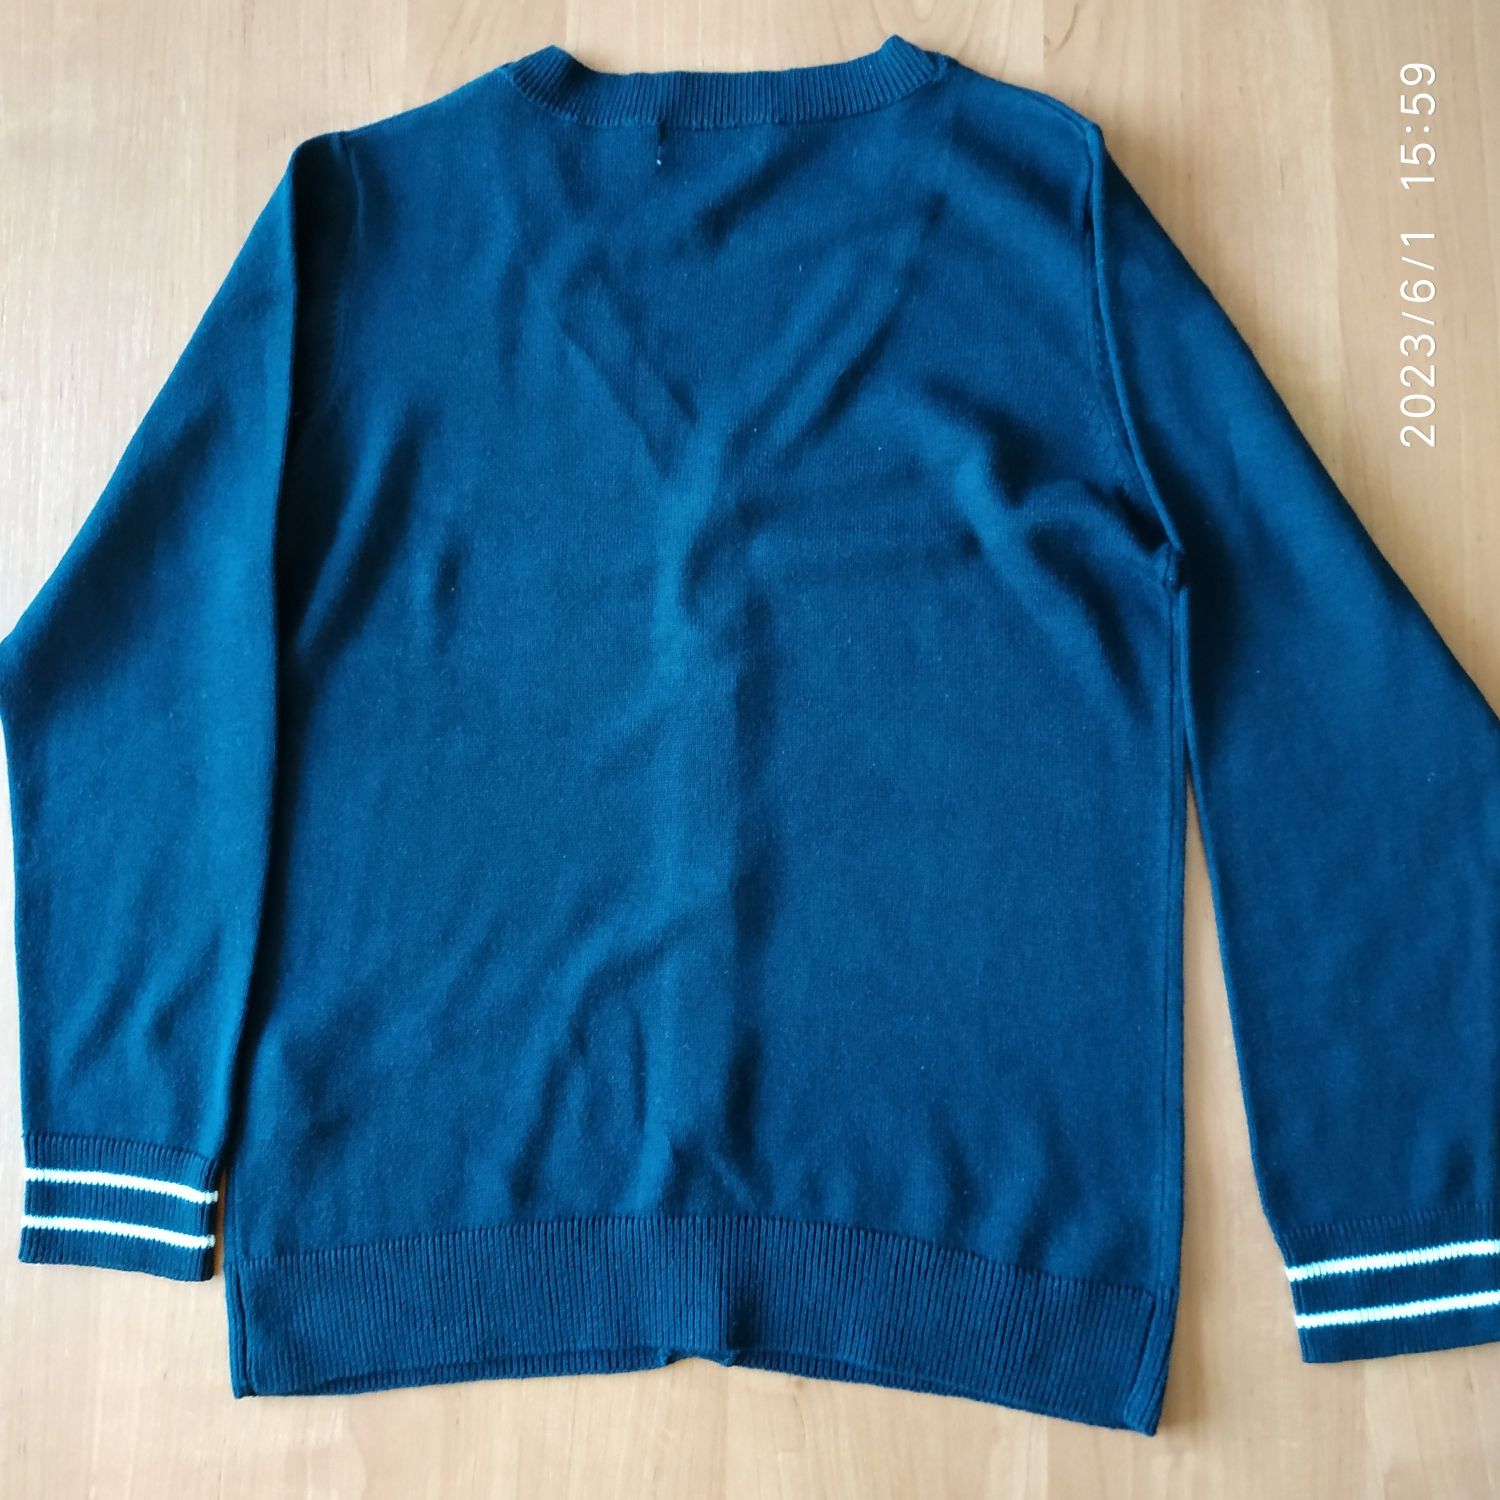 Lincoln & Sharks - sweter, sweterek - rozmiar 146